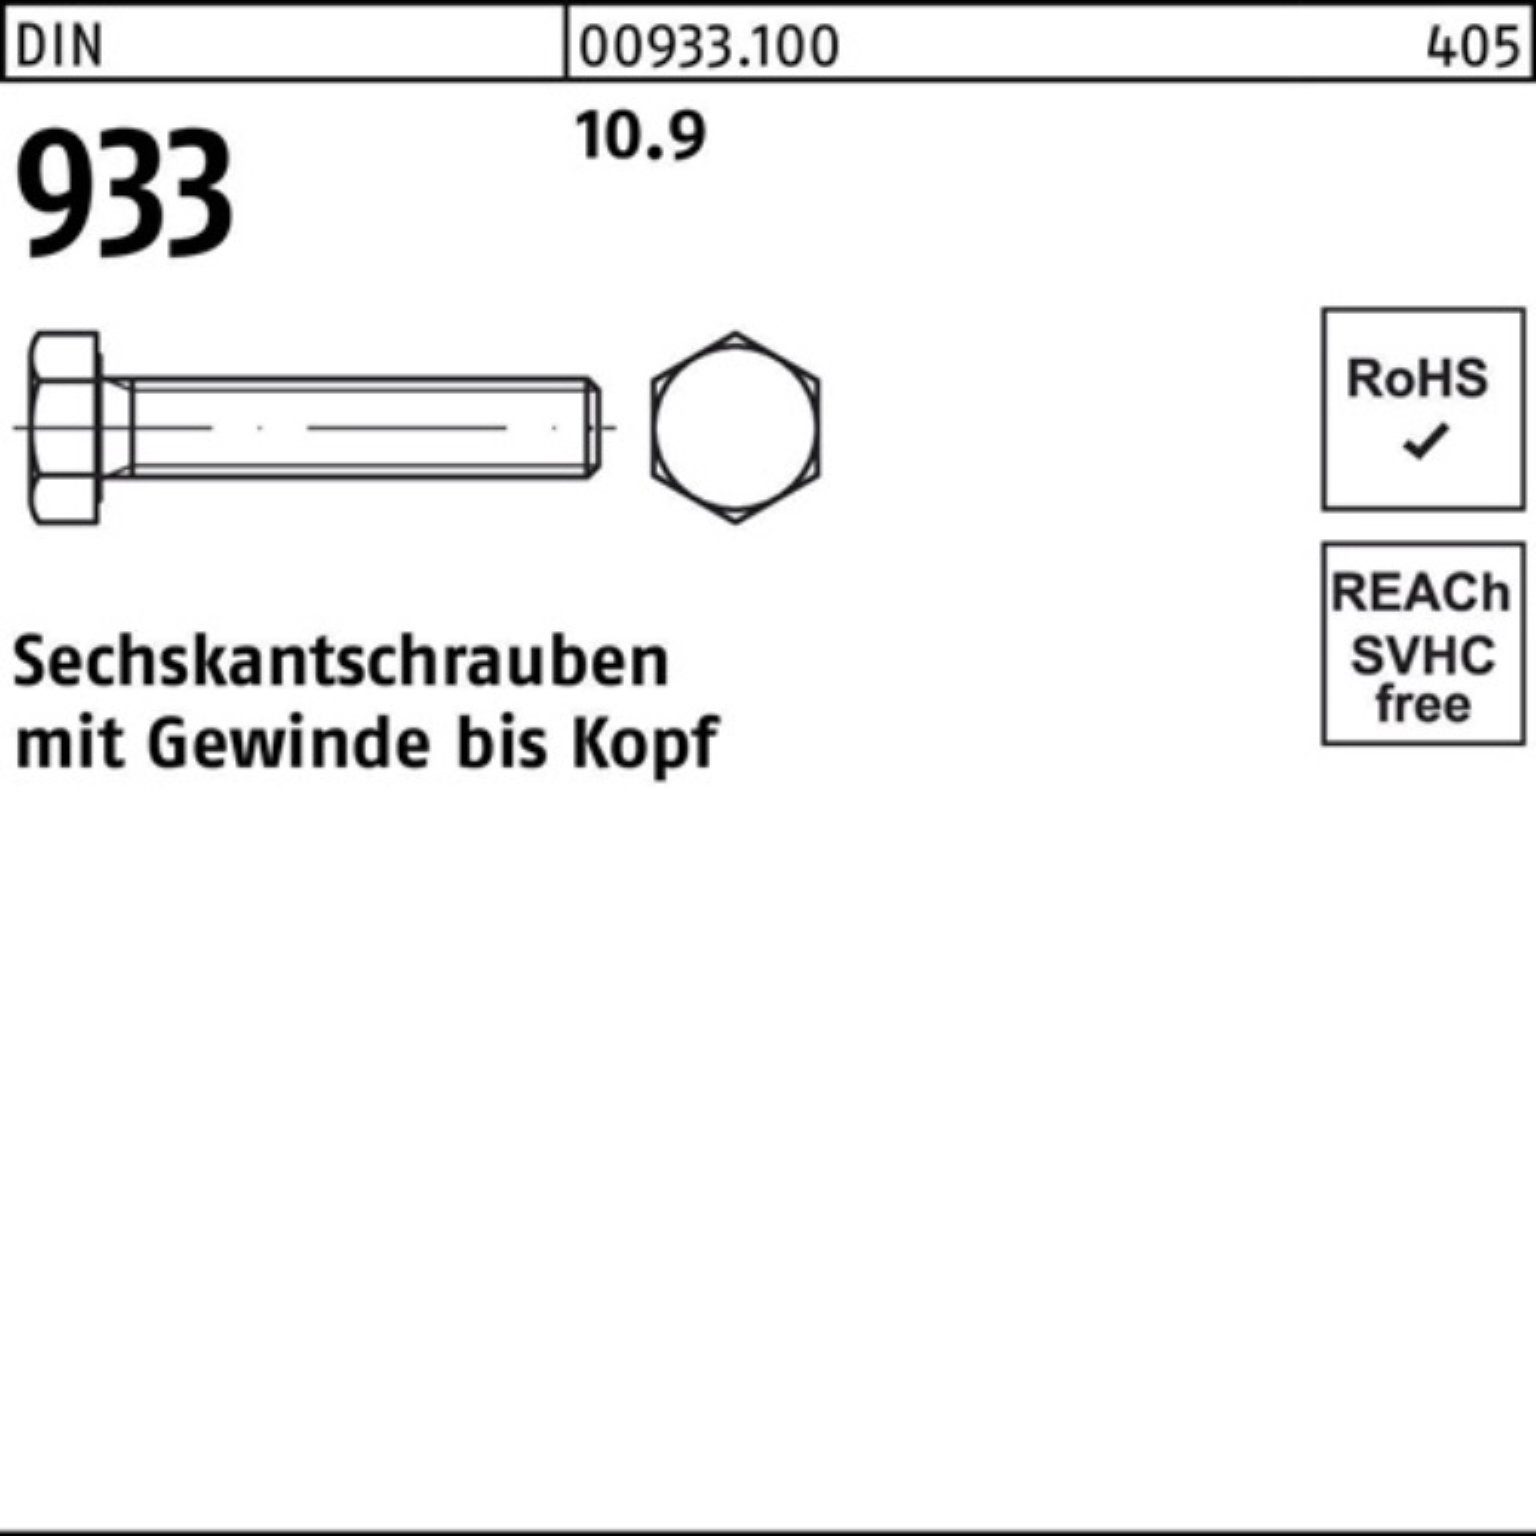 Reyher Sechskantschraube 100er Pack Sechskantschraube Stück 933 10.9 933 DIN 1 M36x VG DIN 60